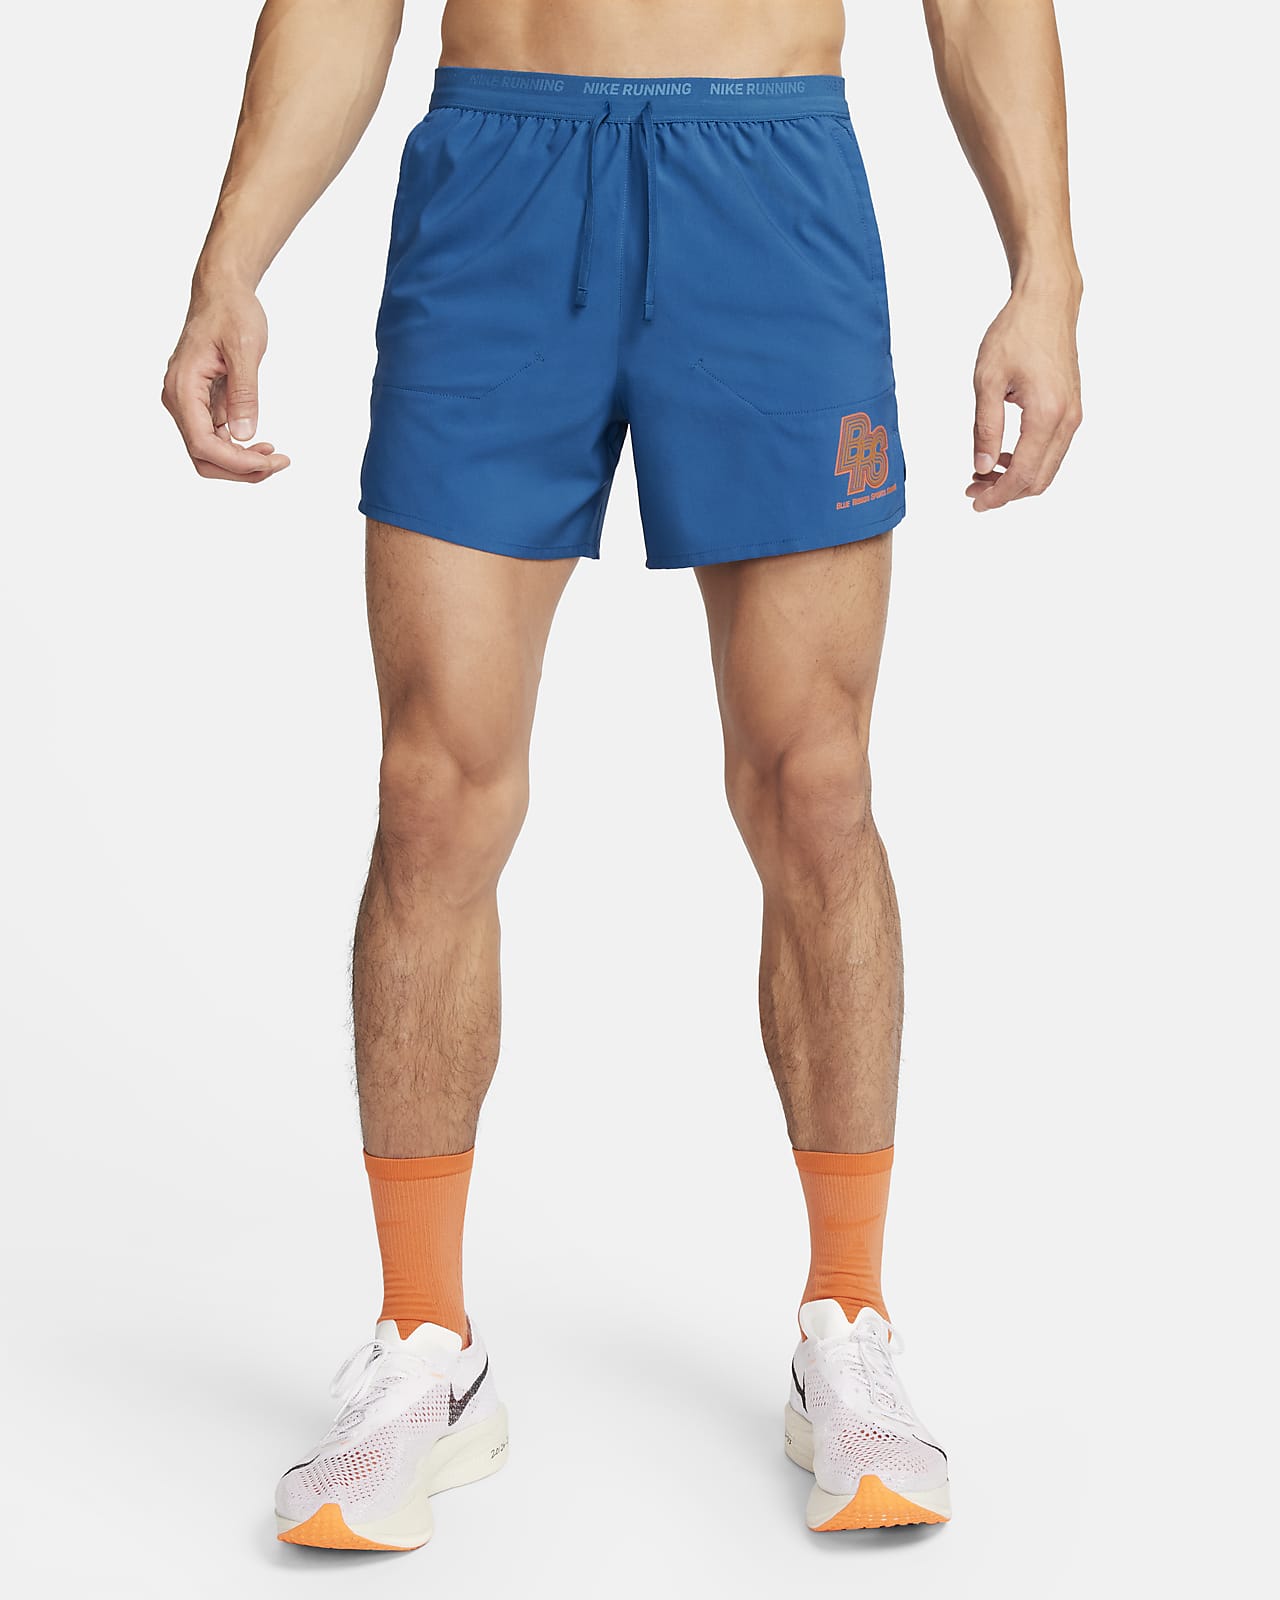 Shorts de running de 13 cm con forro de ropa interior para hombre Nike Running Energy Stride